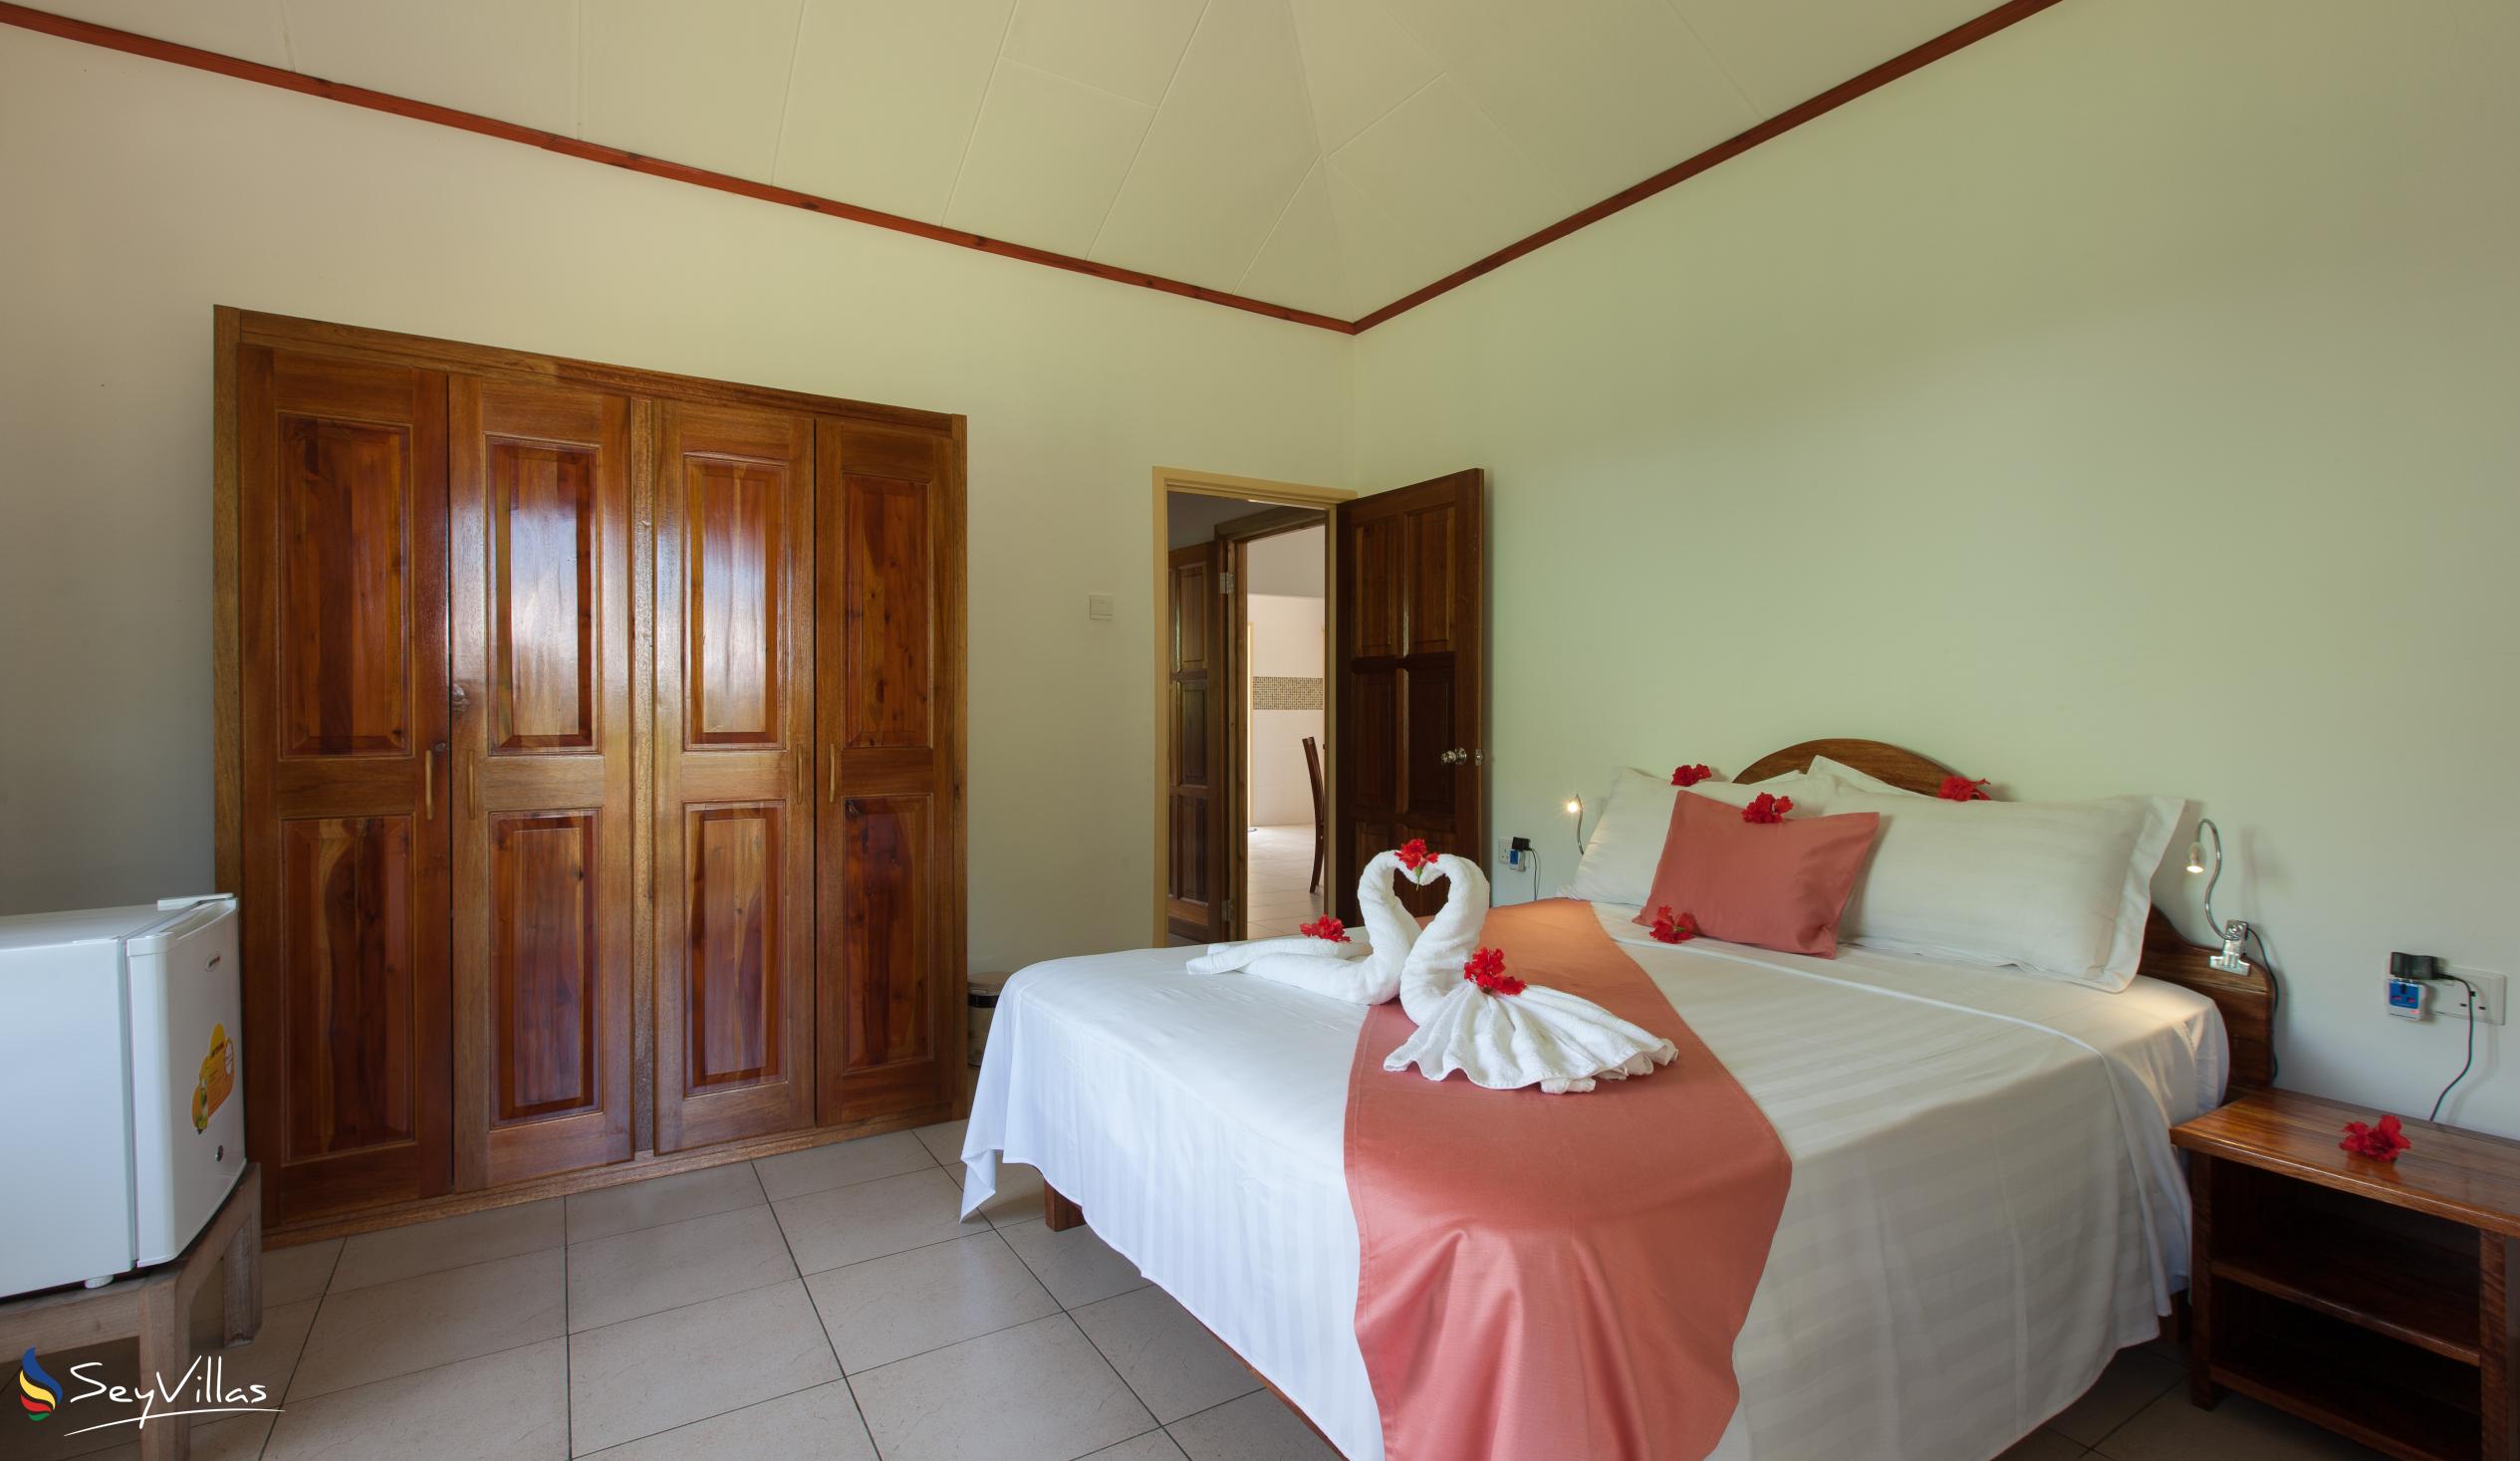 Photo 29: Hostellerie La Digue - 3-Bedroom Chalet - La Digue (Seychelles)